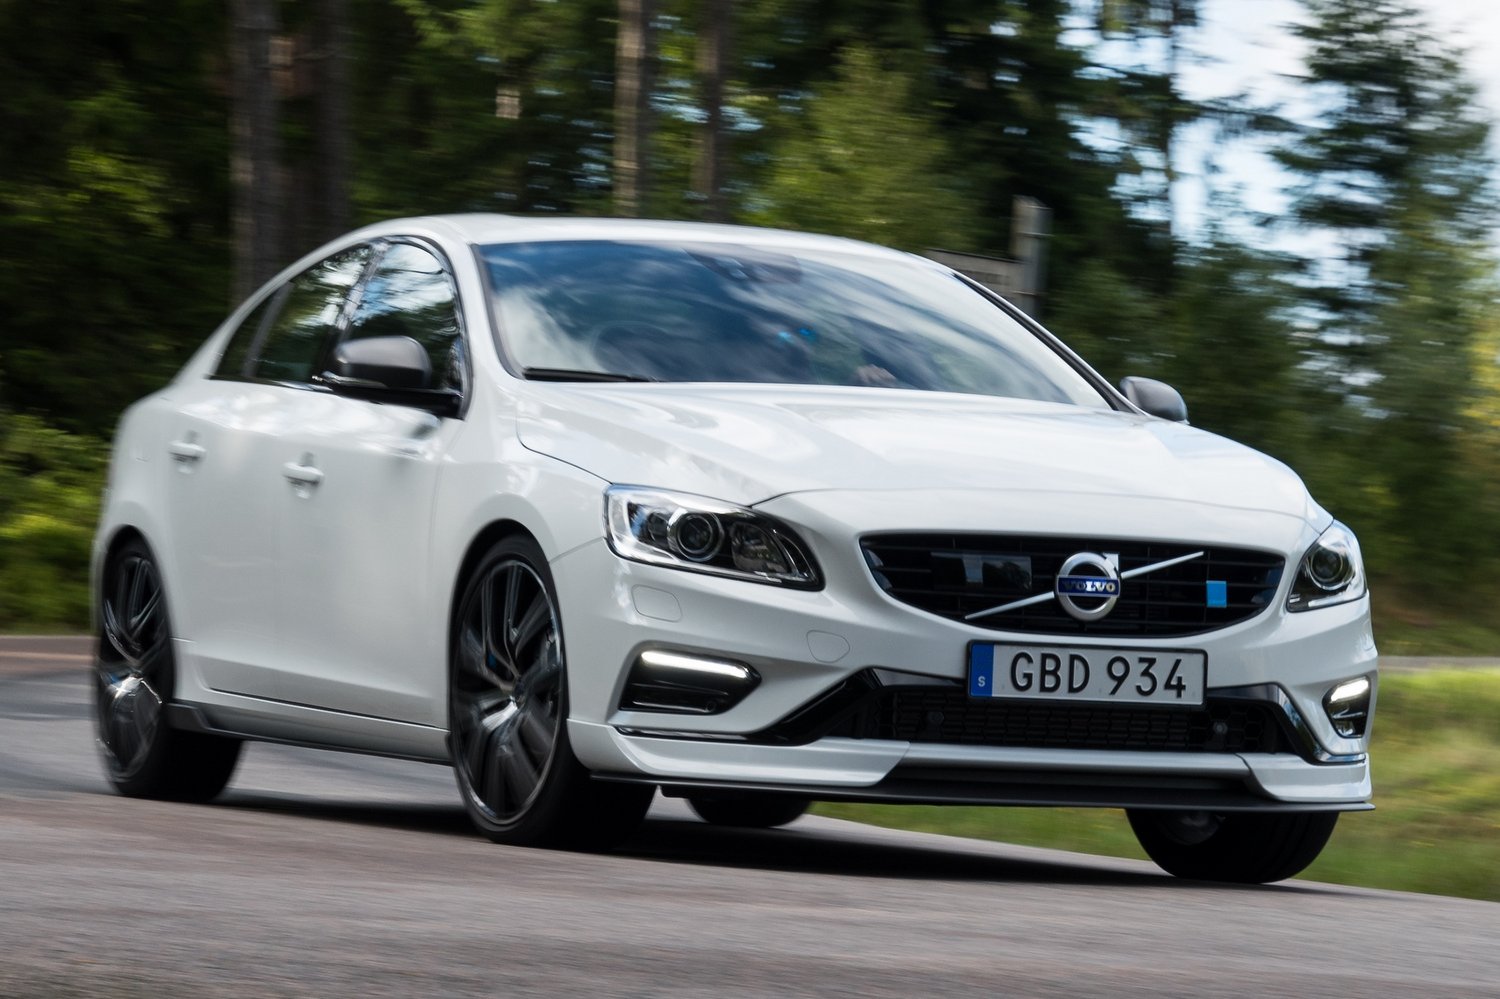 Karbon szorítja az útra a Volvo sportszedánját 15